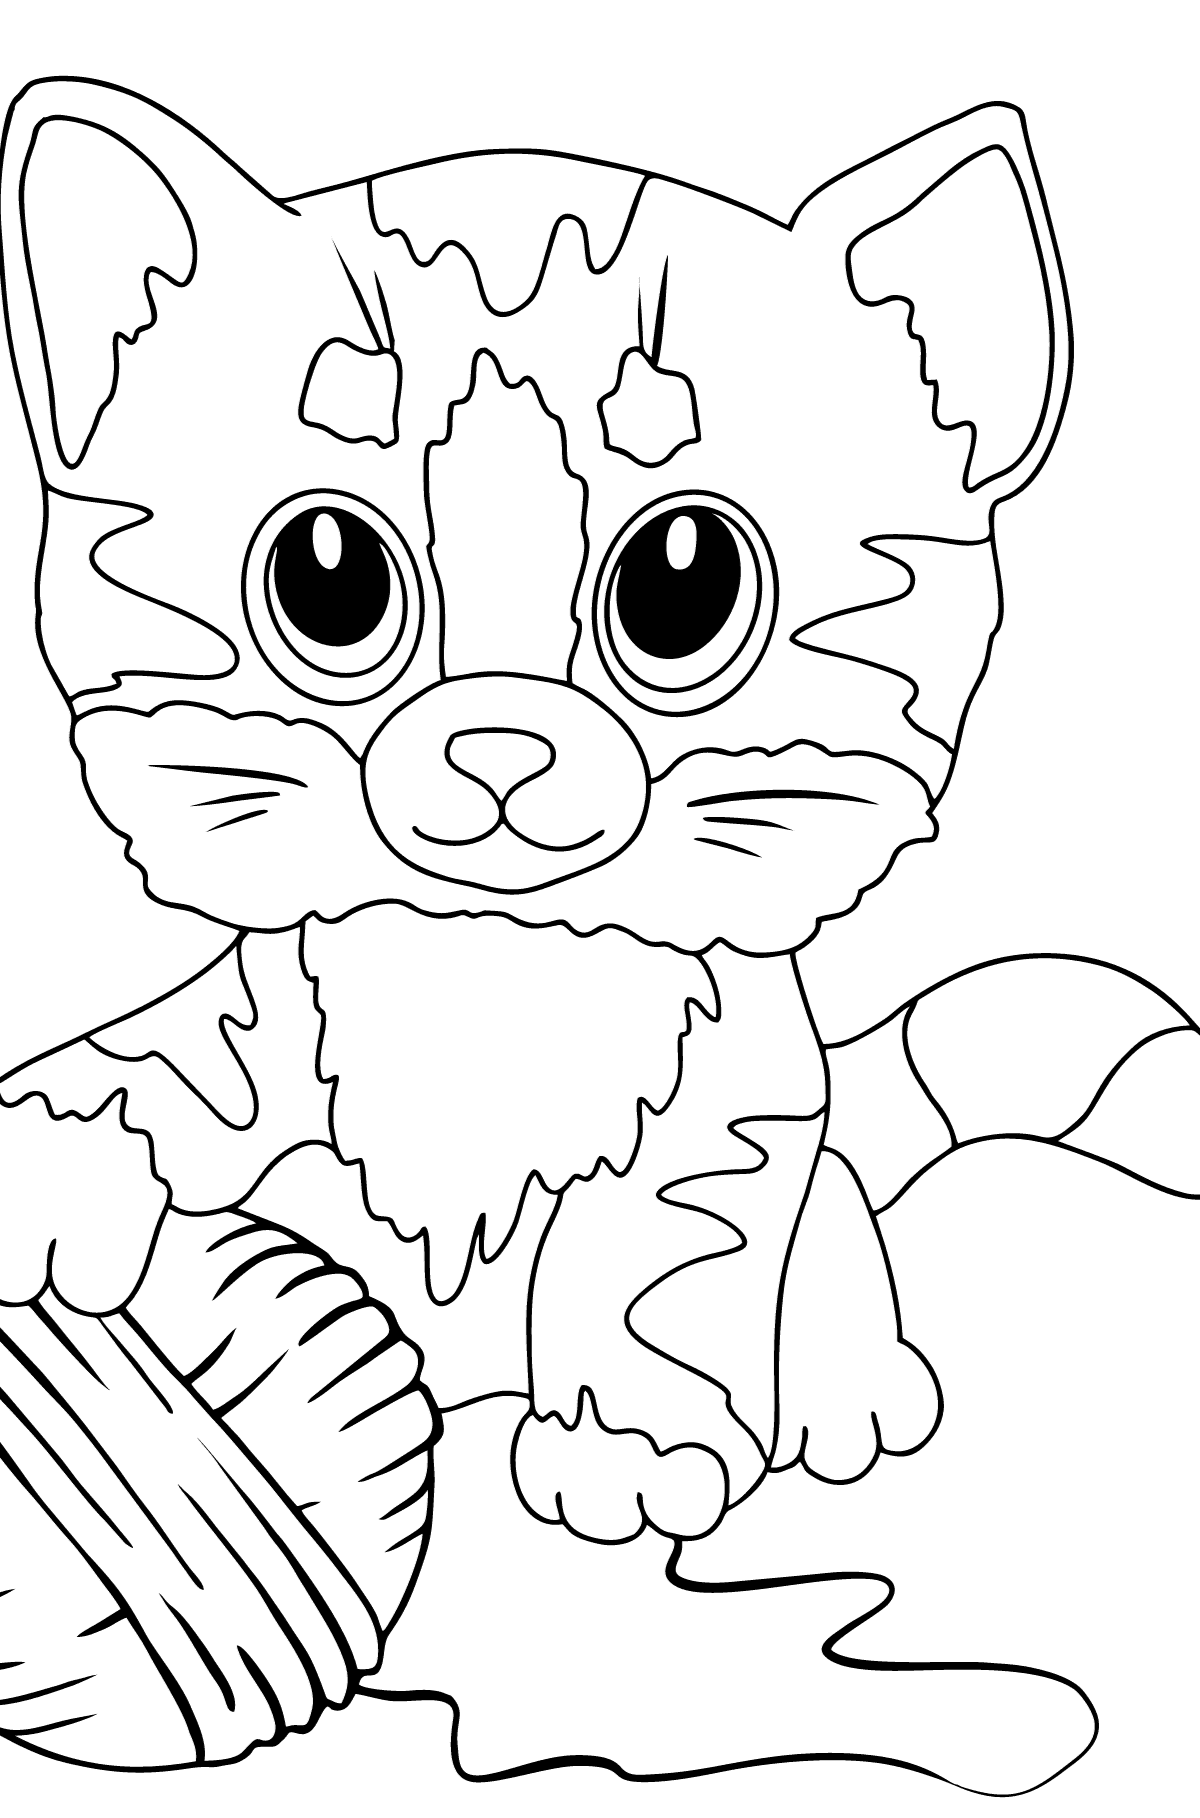 Boyama sayfası nazik kedi yavrusu (hafif) - Boyamalar çocuklar için